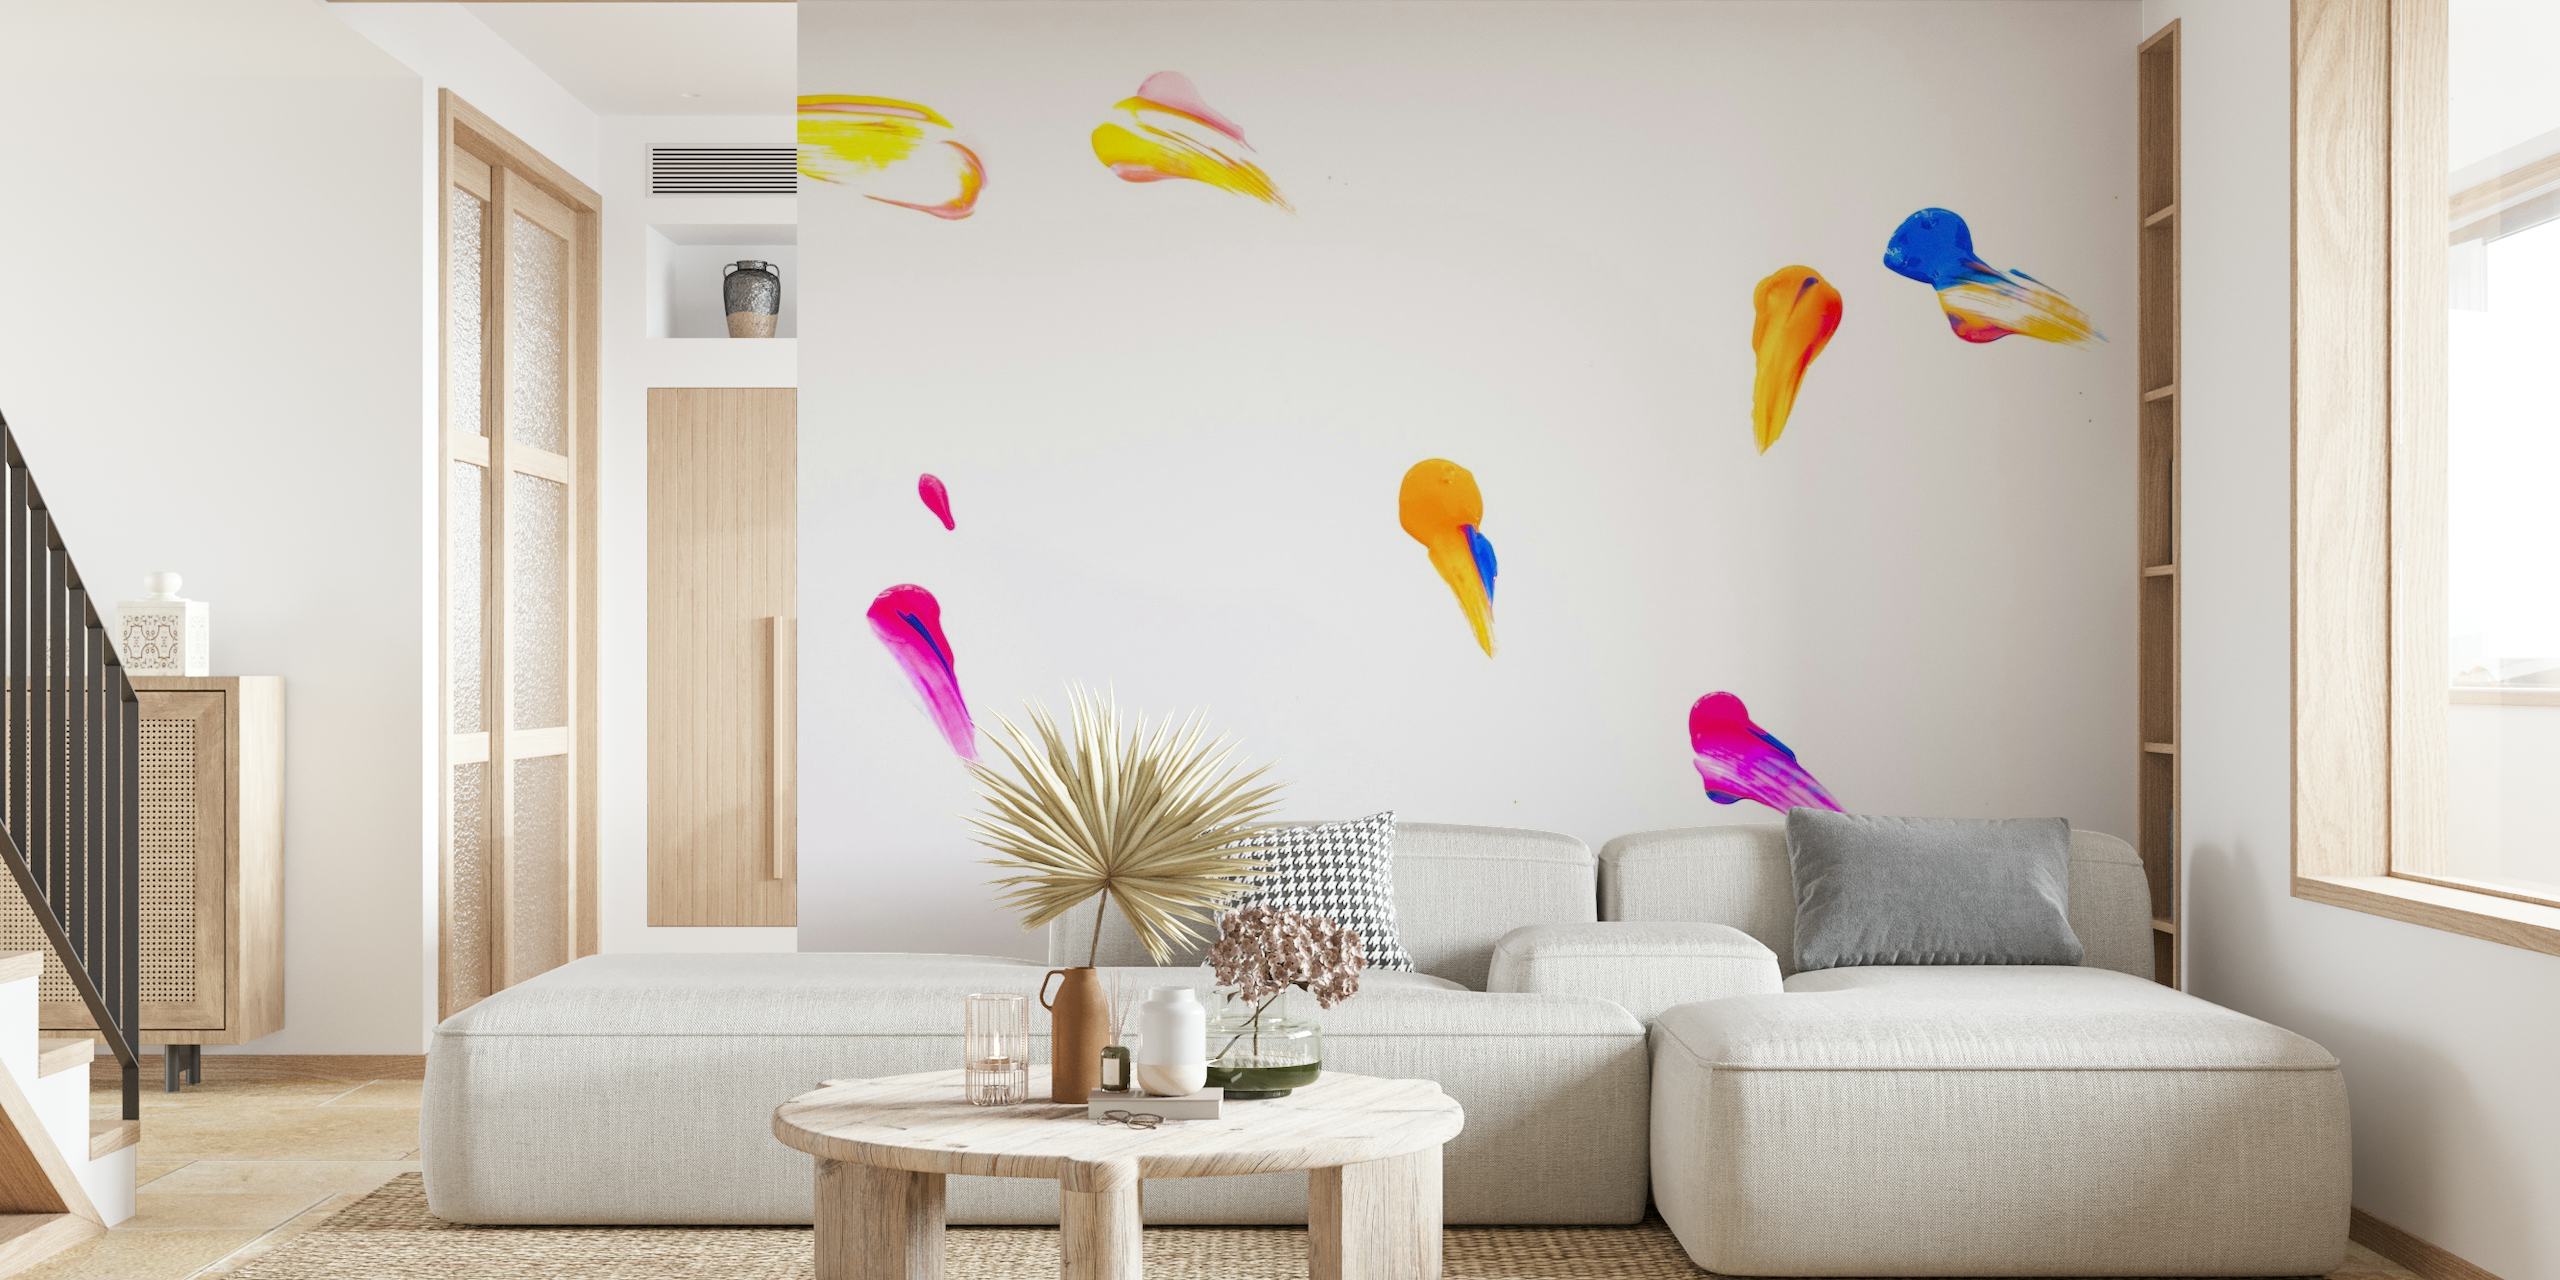 fotomural vinílico de parede colorido com pinceladas abstratas em fundo branco